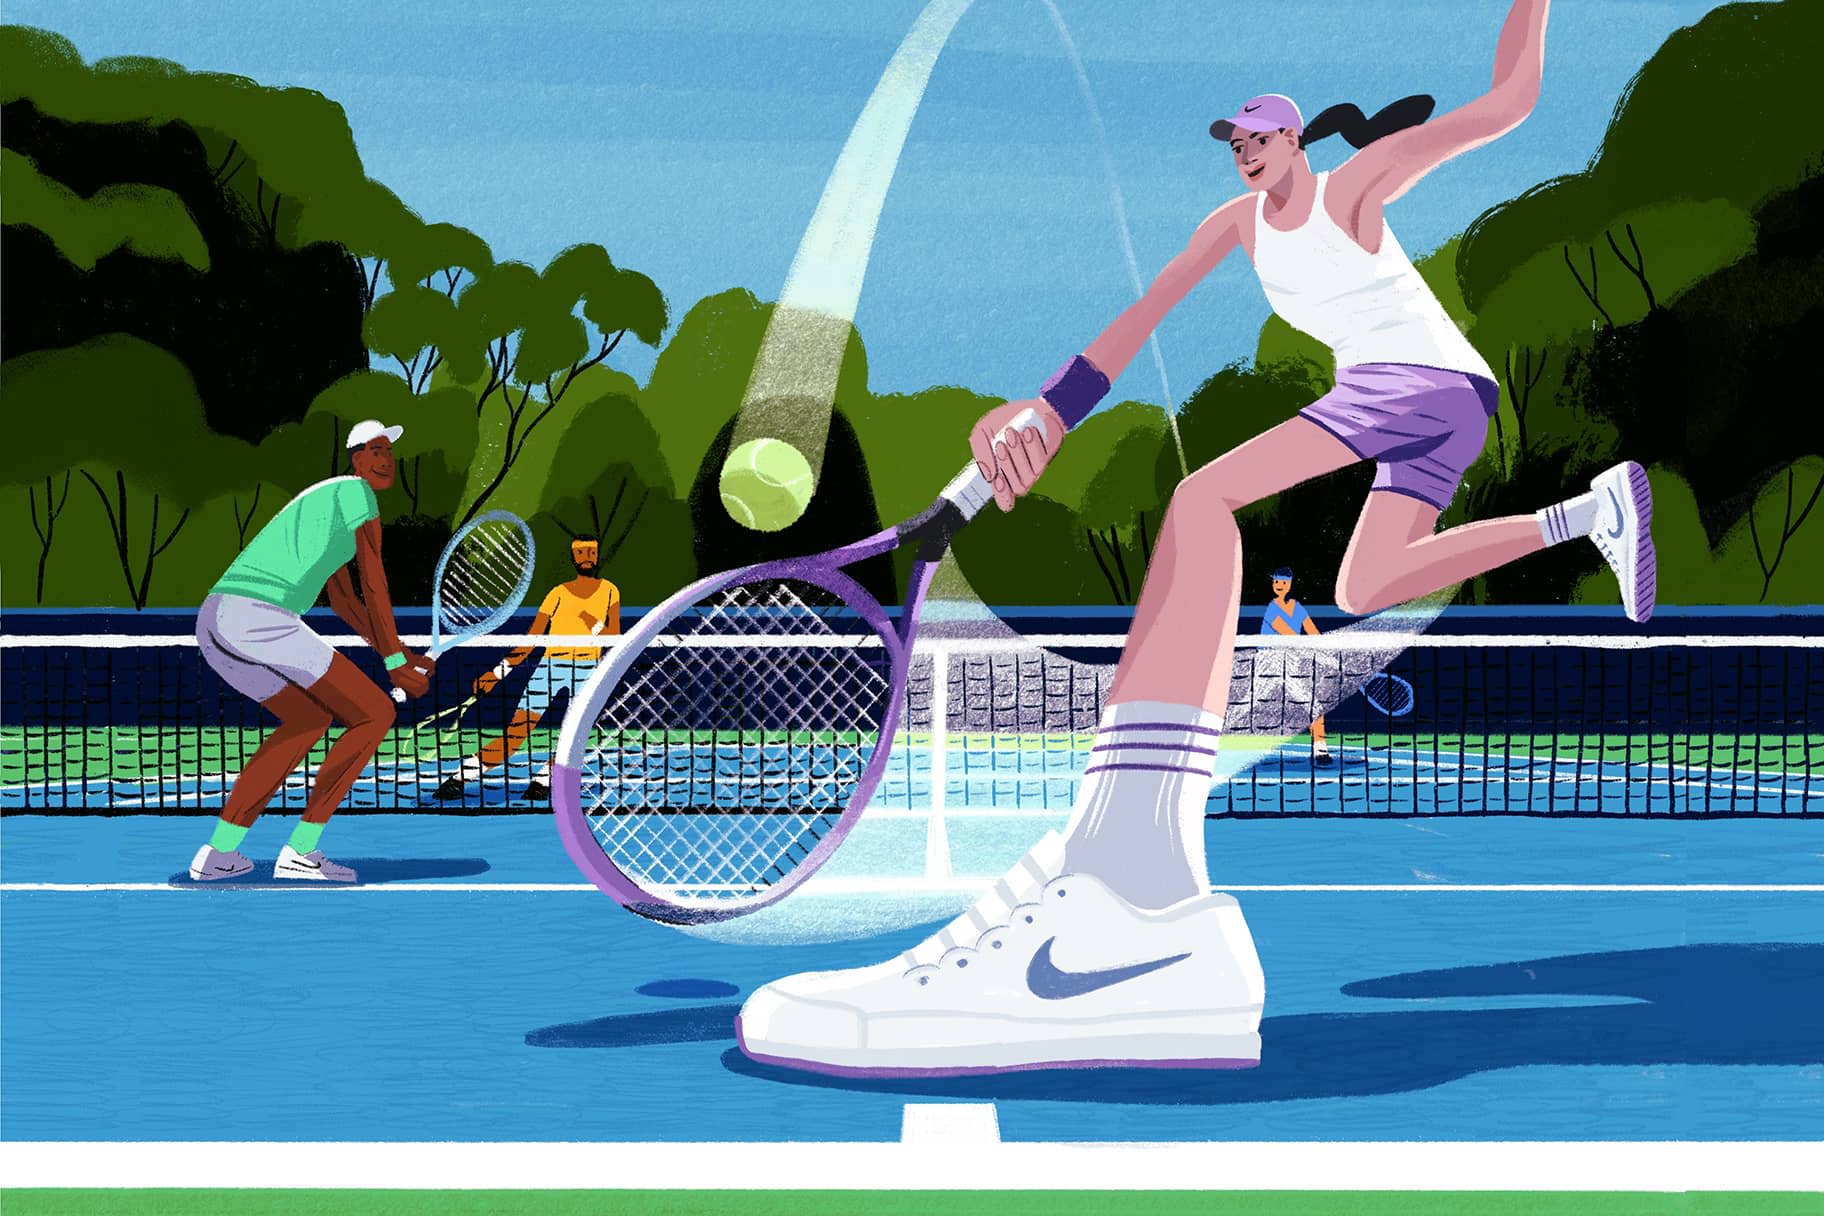 De basics van dubbelspel tennis: leidraad voor beginners met spelregels, tips en strategieën voor dubbelspel tennis